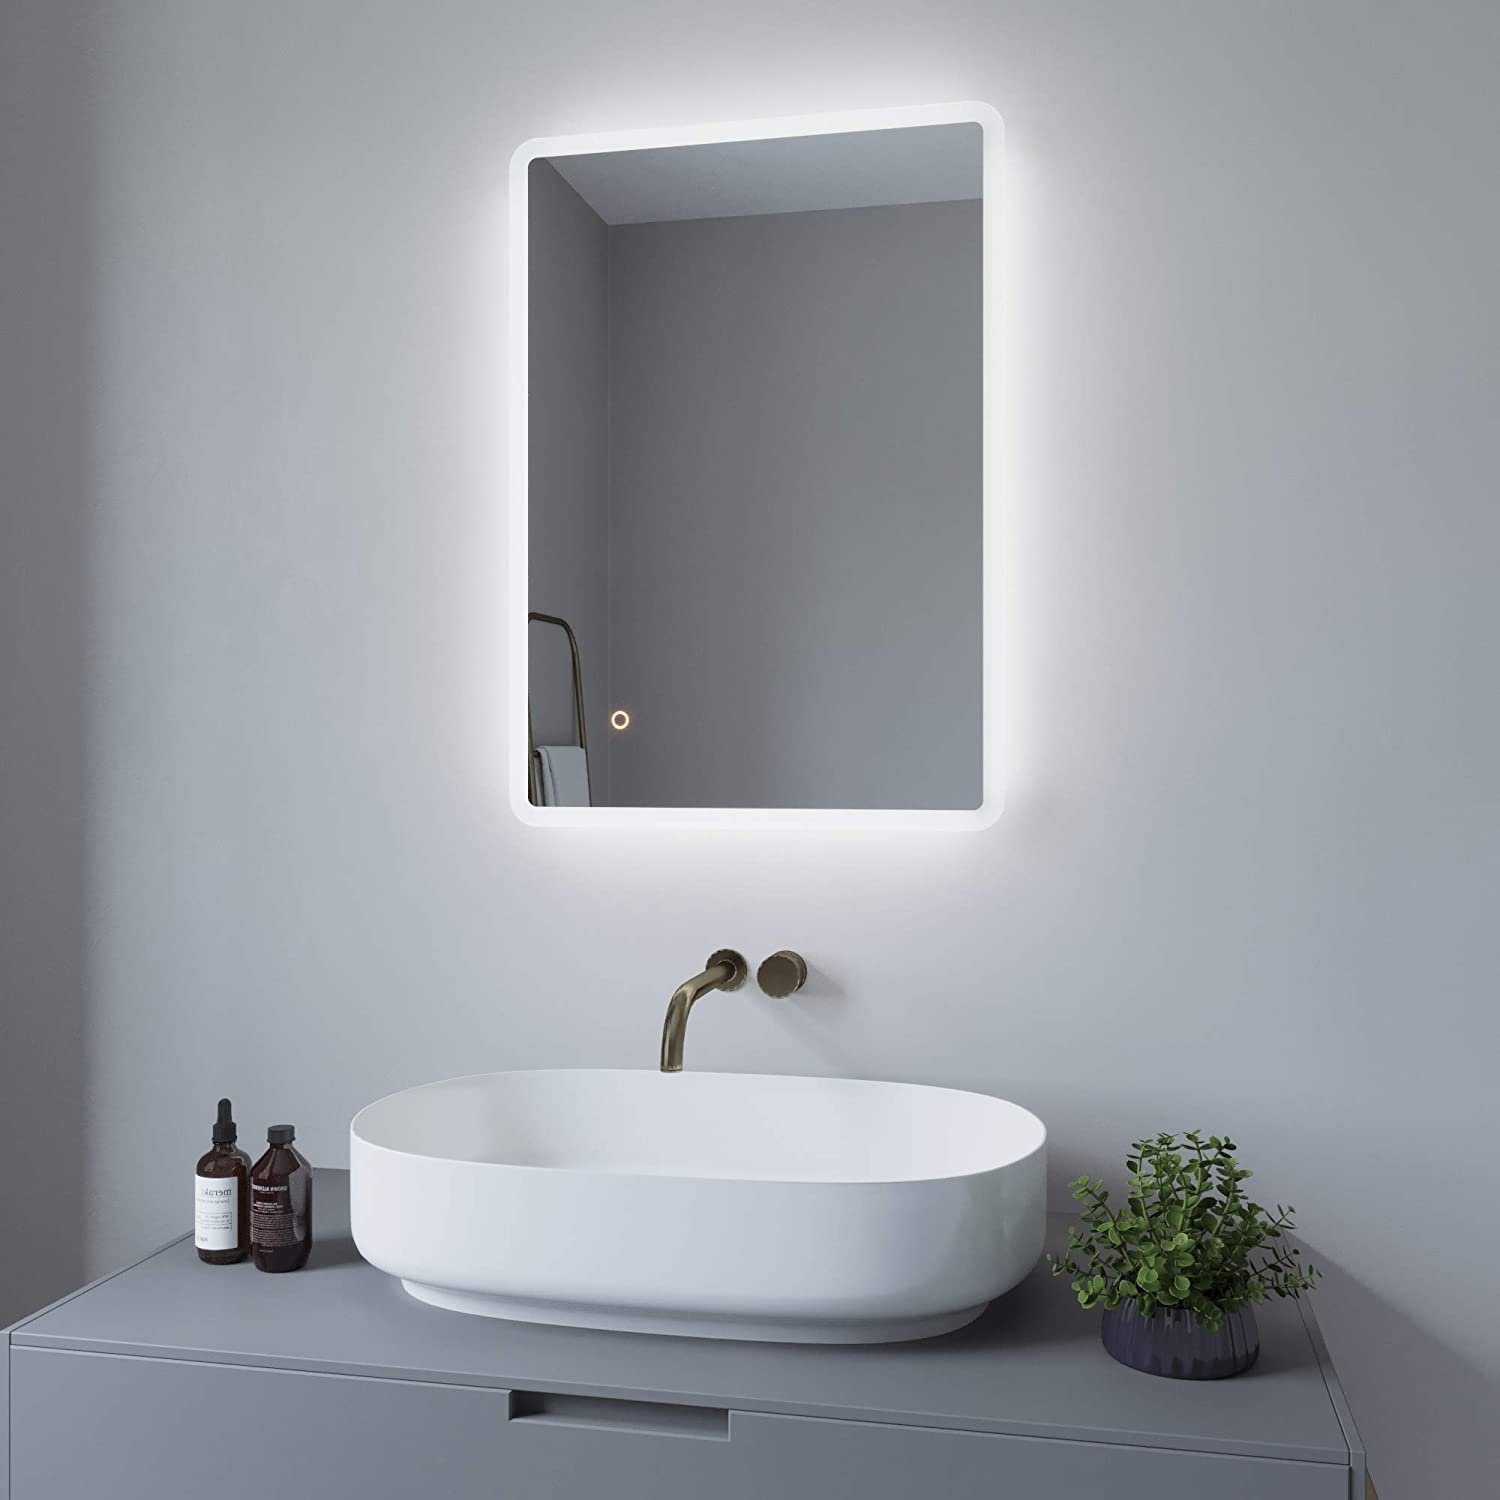 AQUABATOS LED-Lichtspiegel LED Badspiegel Badezimmerspiegel Bad Spiegel mit  Beleuchtung 70x50cm, Dimmbar Touch Schalter Kaltweiß 6400K IP44  Energiesparend